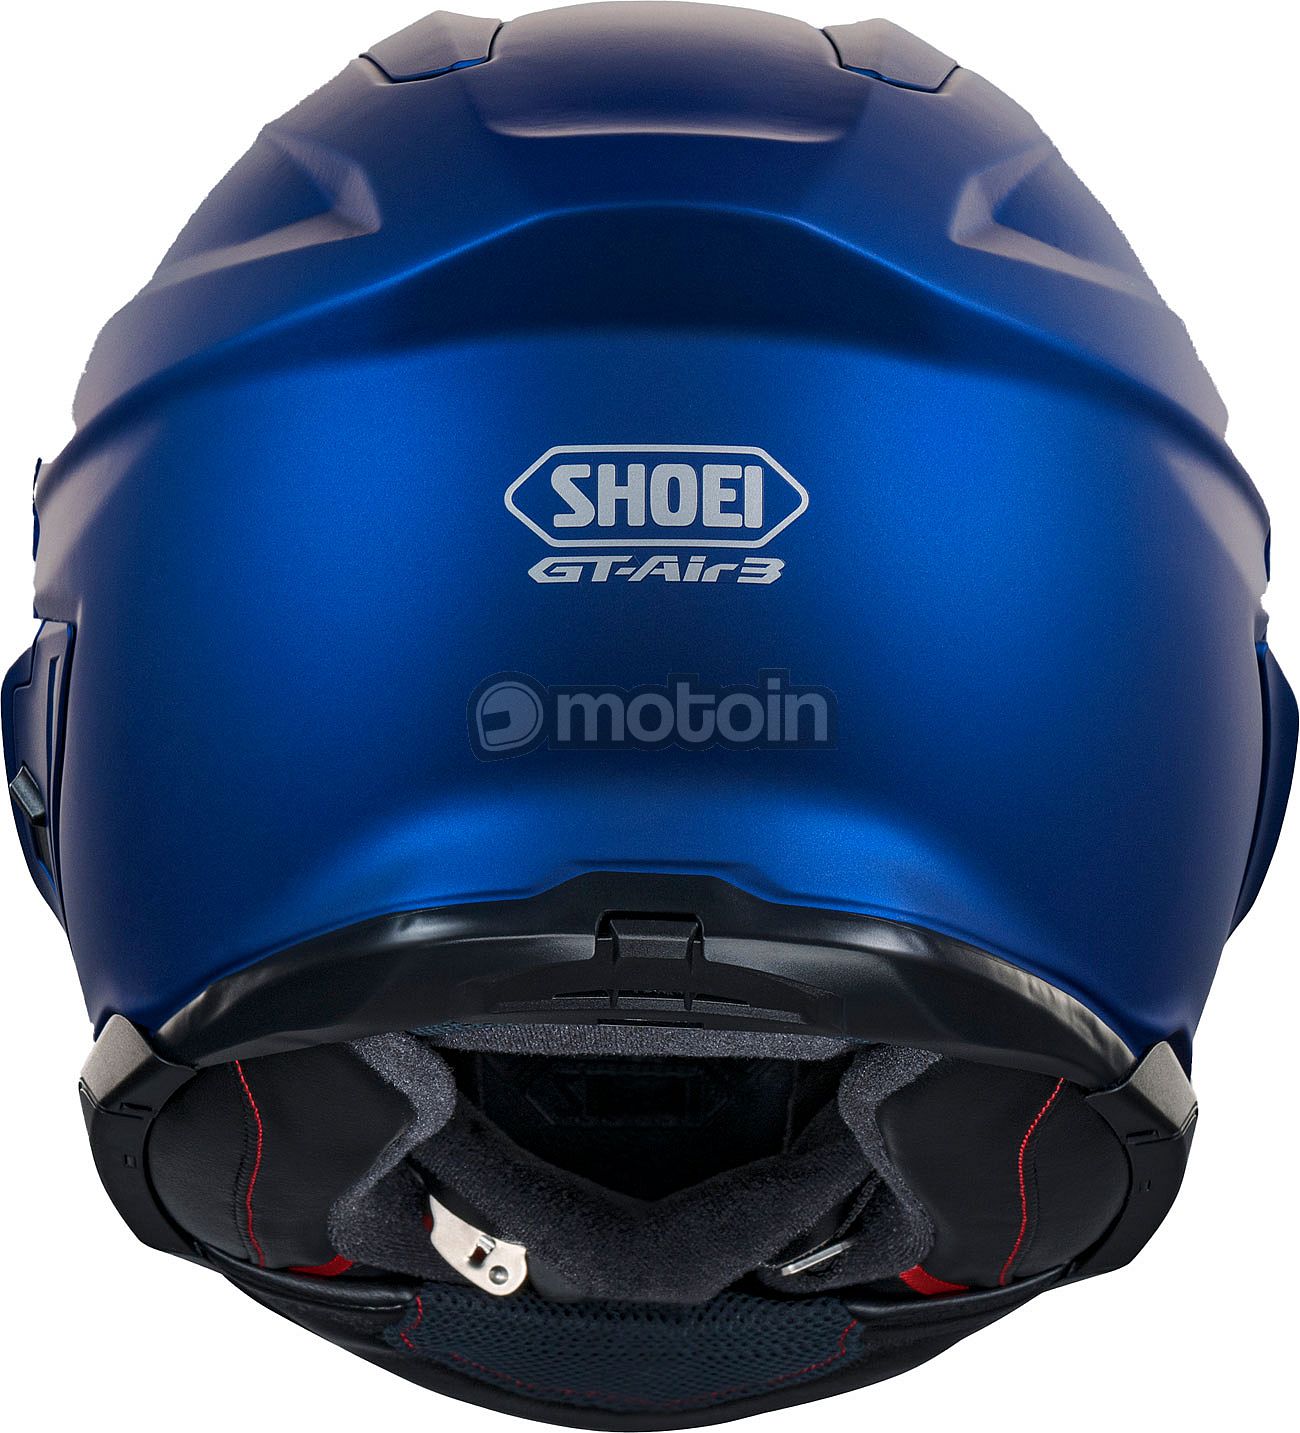 Shoei GT-Air 3 : le casque intégral incontournable